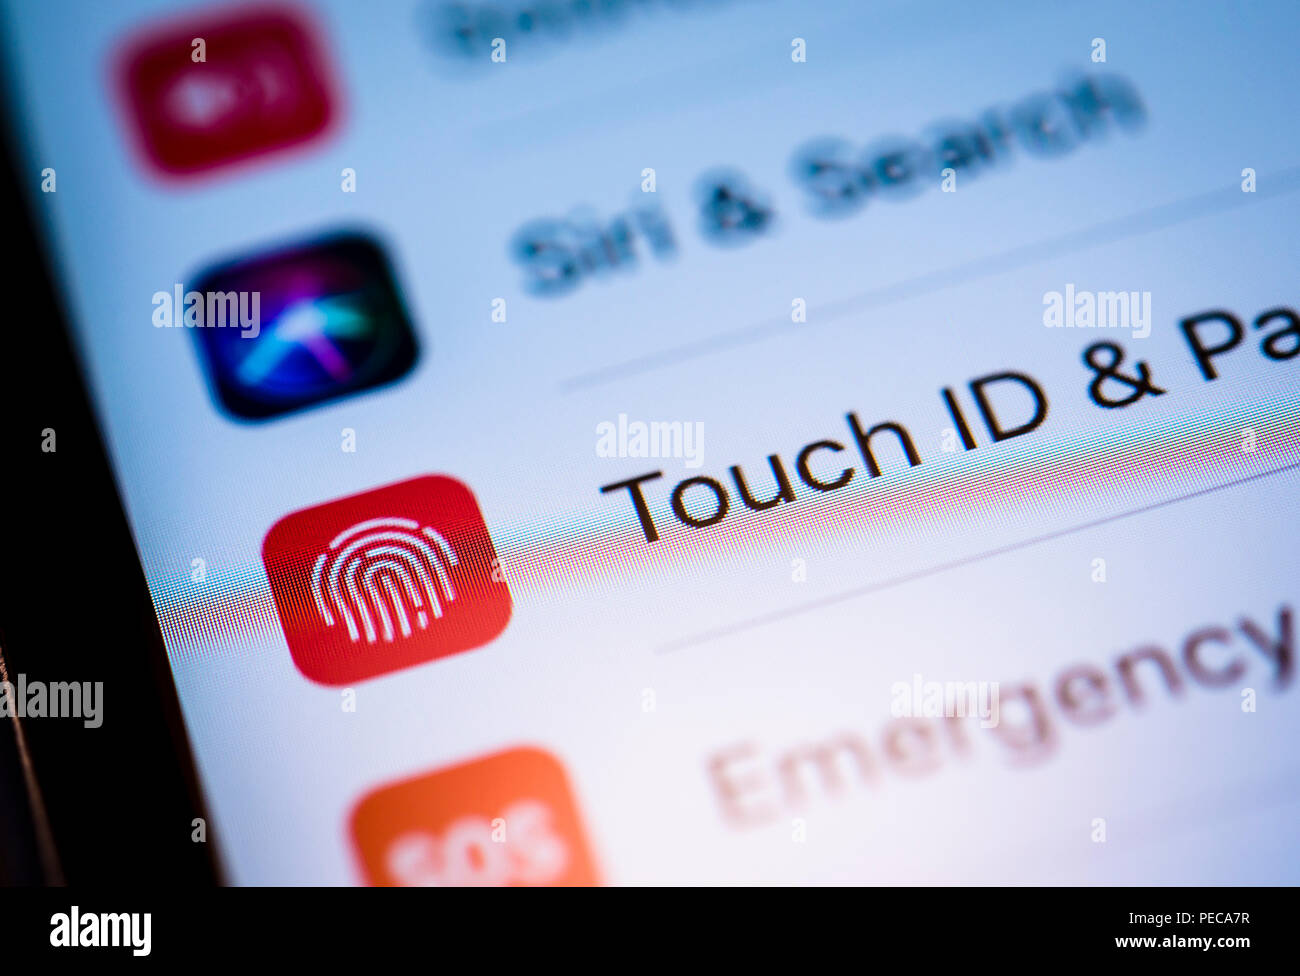 Touch ID et réglages de code affiché sur un iPhone, iOS, smartphone, écran, close-up, détail, Allemagne Banque D'Images